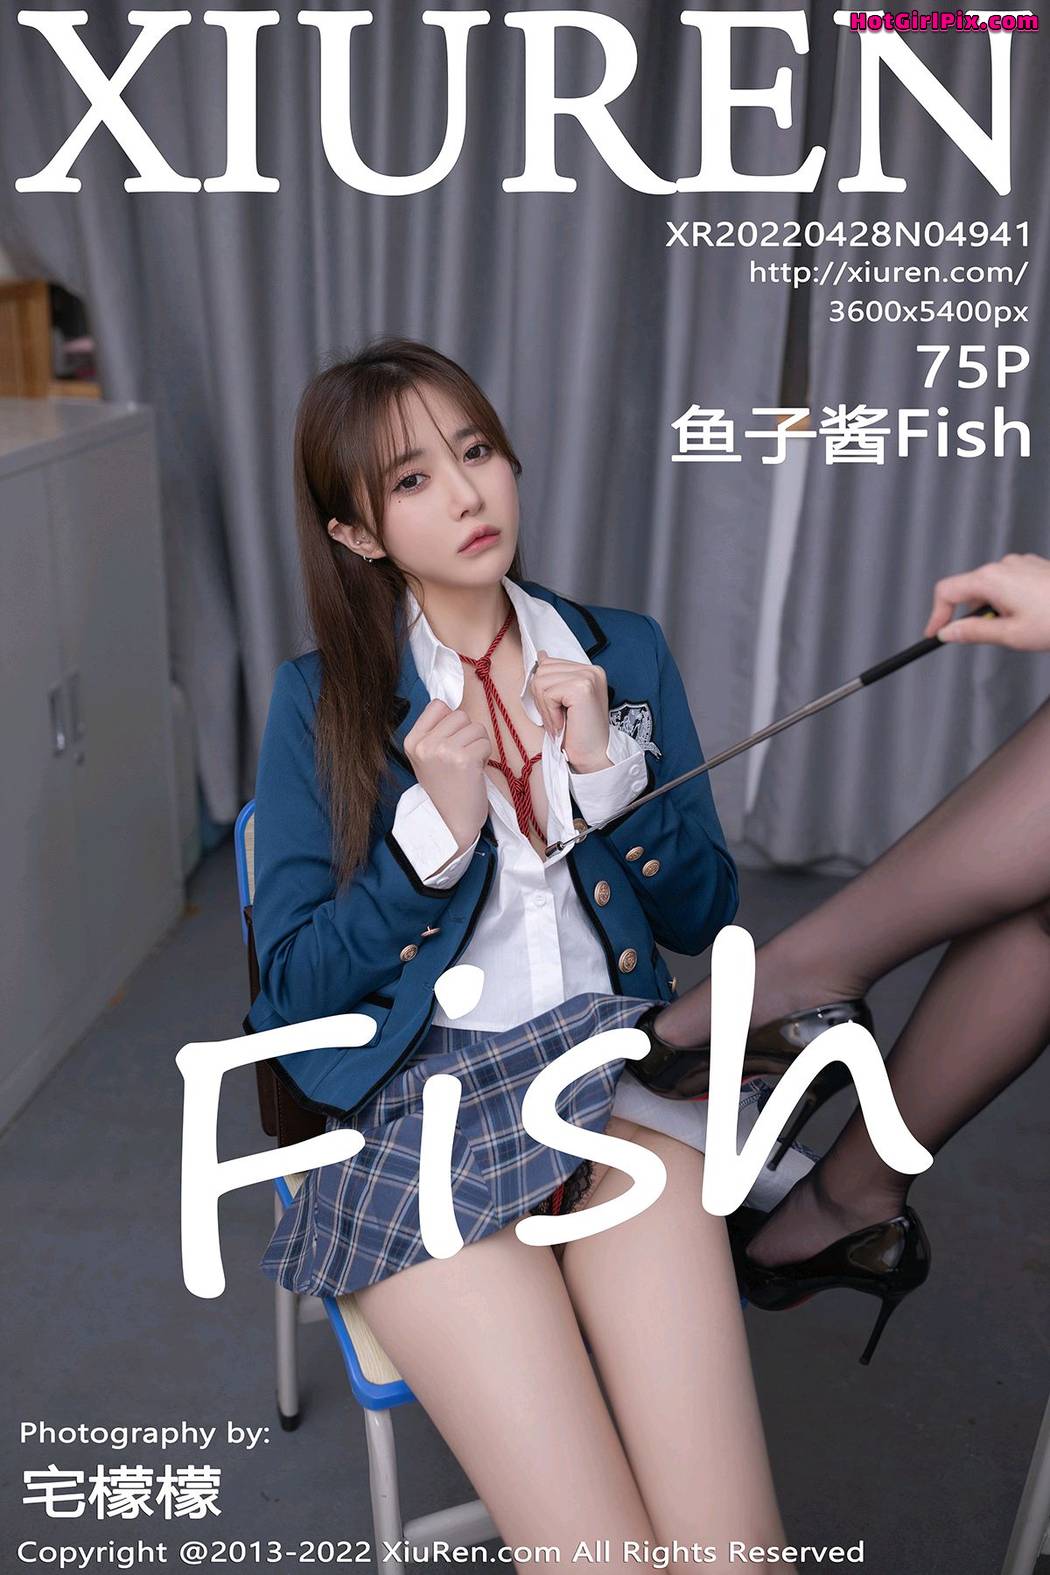 [XIUREN] No.4941 鱼子酱Fish Cover Photo